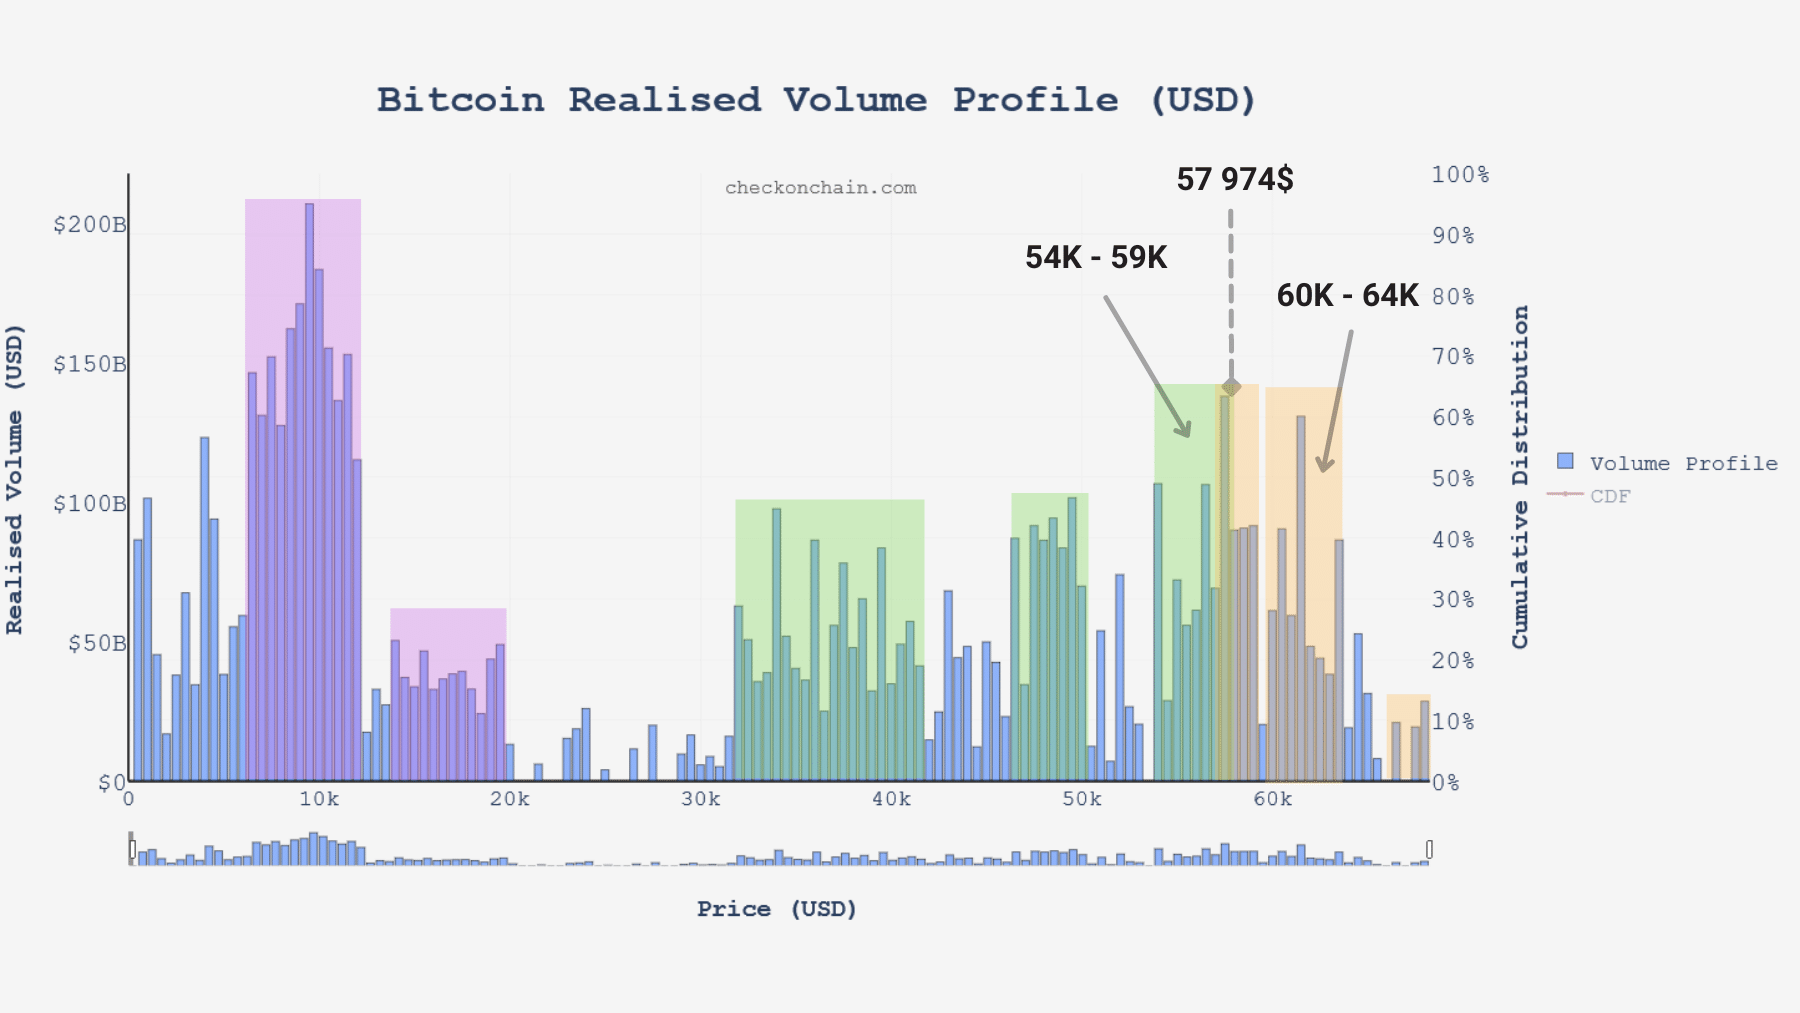 Gráfico del volumen realizado de bitcoins (BTC) (Fuente: checkonchain.com)